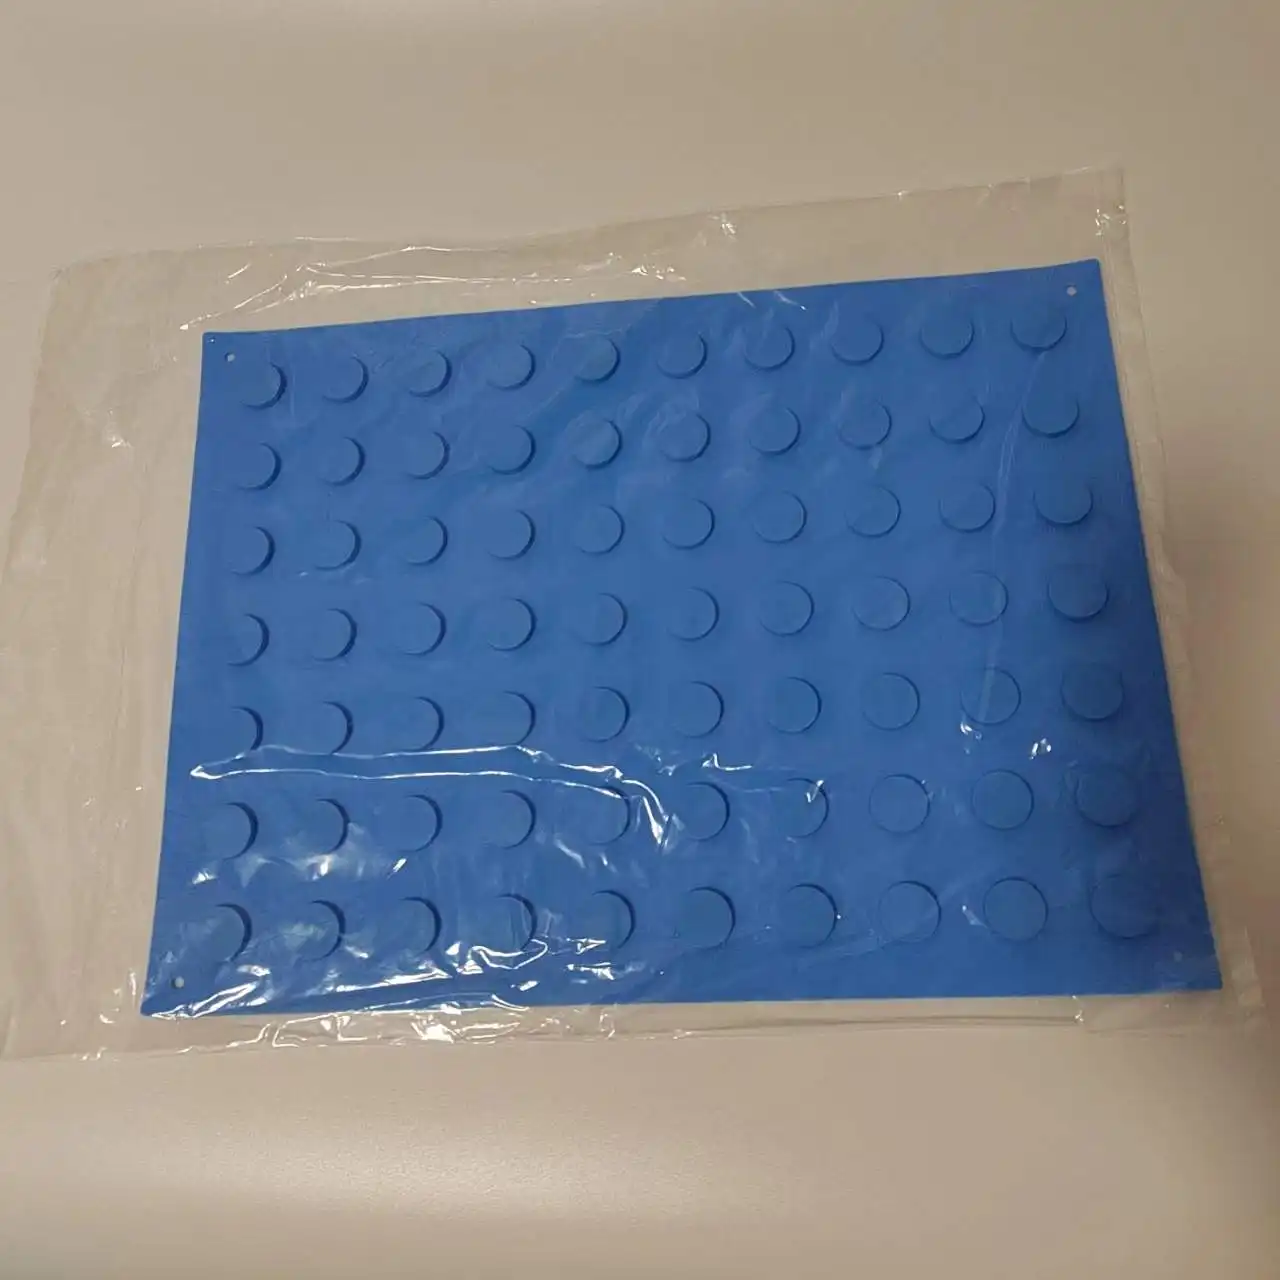 सिलिकॉन मैग्नेटिक MAT 12"x 16" नीला लचीला और गैर-पर्ची पुन: प्रयोज्य और आटोक्लेव